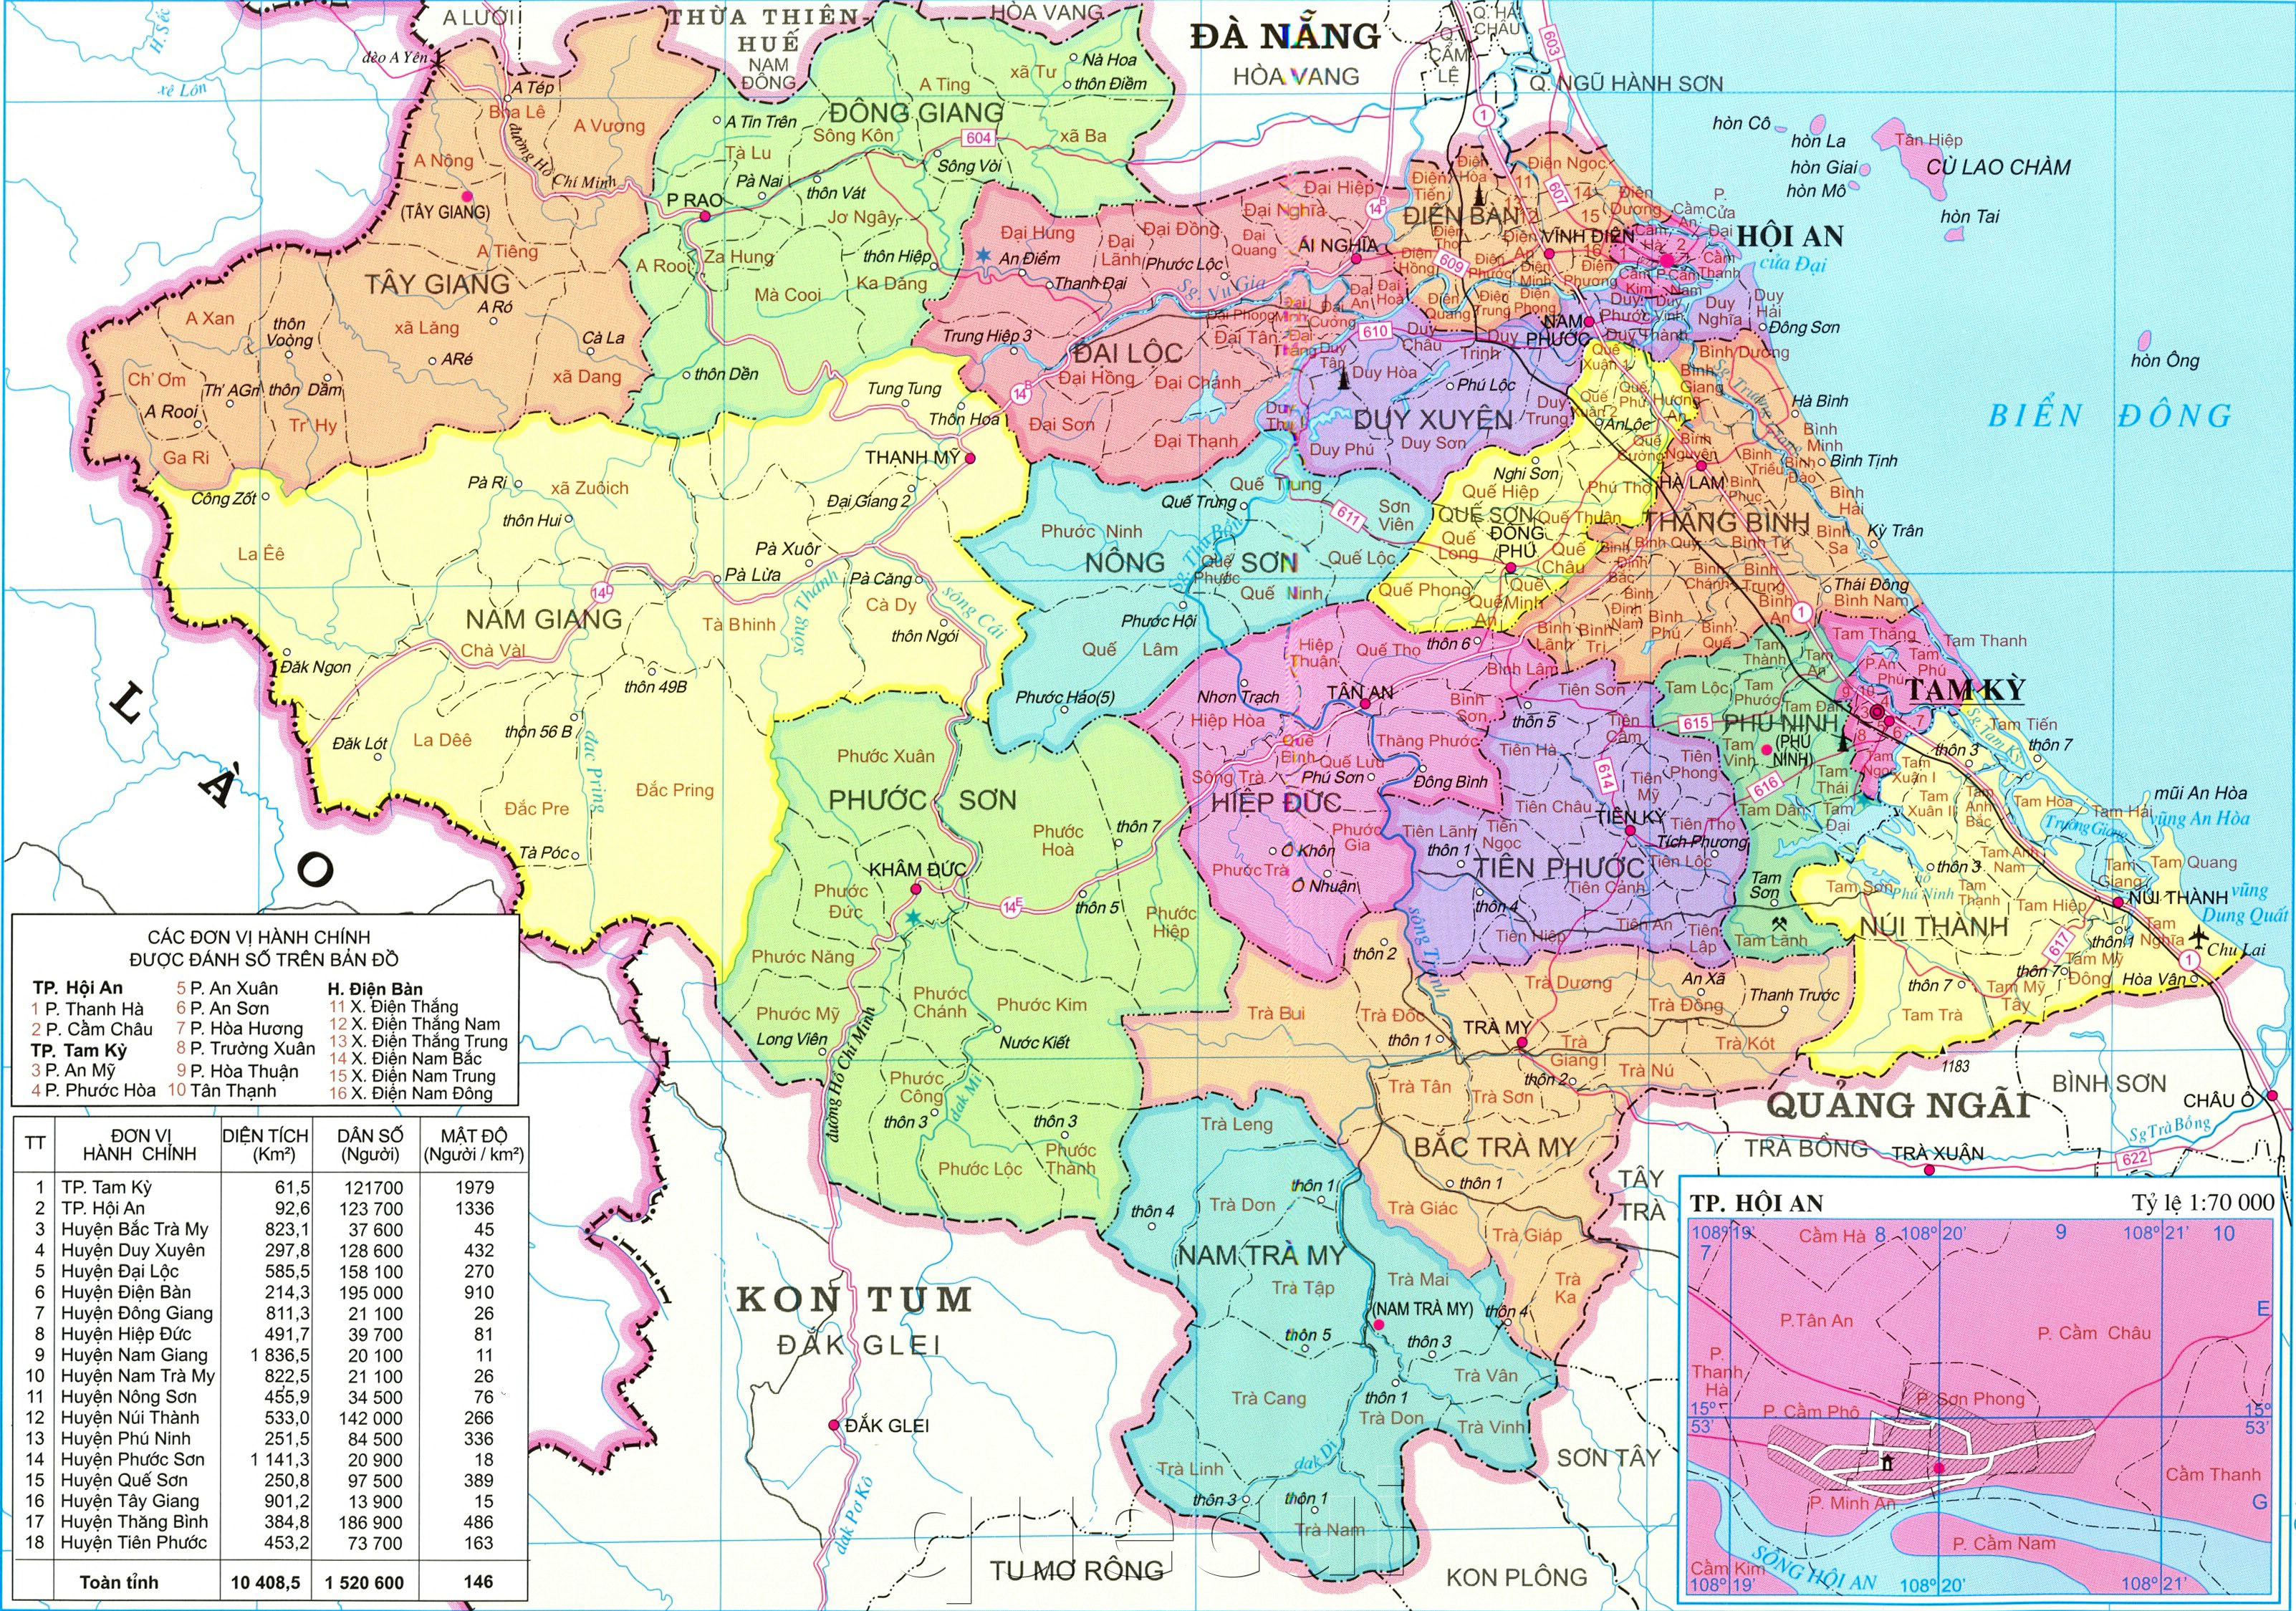 Bản đồ Duyên Hải Nam Trung Bộ: Với bản đồ Duyên Hải Nam Trung Bộ đầy đủ và chi tiết, bạn có thể dễ dàng tìm hiểu và khám phá những nét đặc trưng của vùng này. Hình ảnh sẽ giúp bạn hiểu rõ hơn về vị trí địa lý, hệ thống giao thông và các địa danh quan trọng trong khu vực.